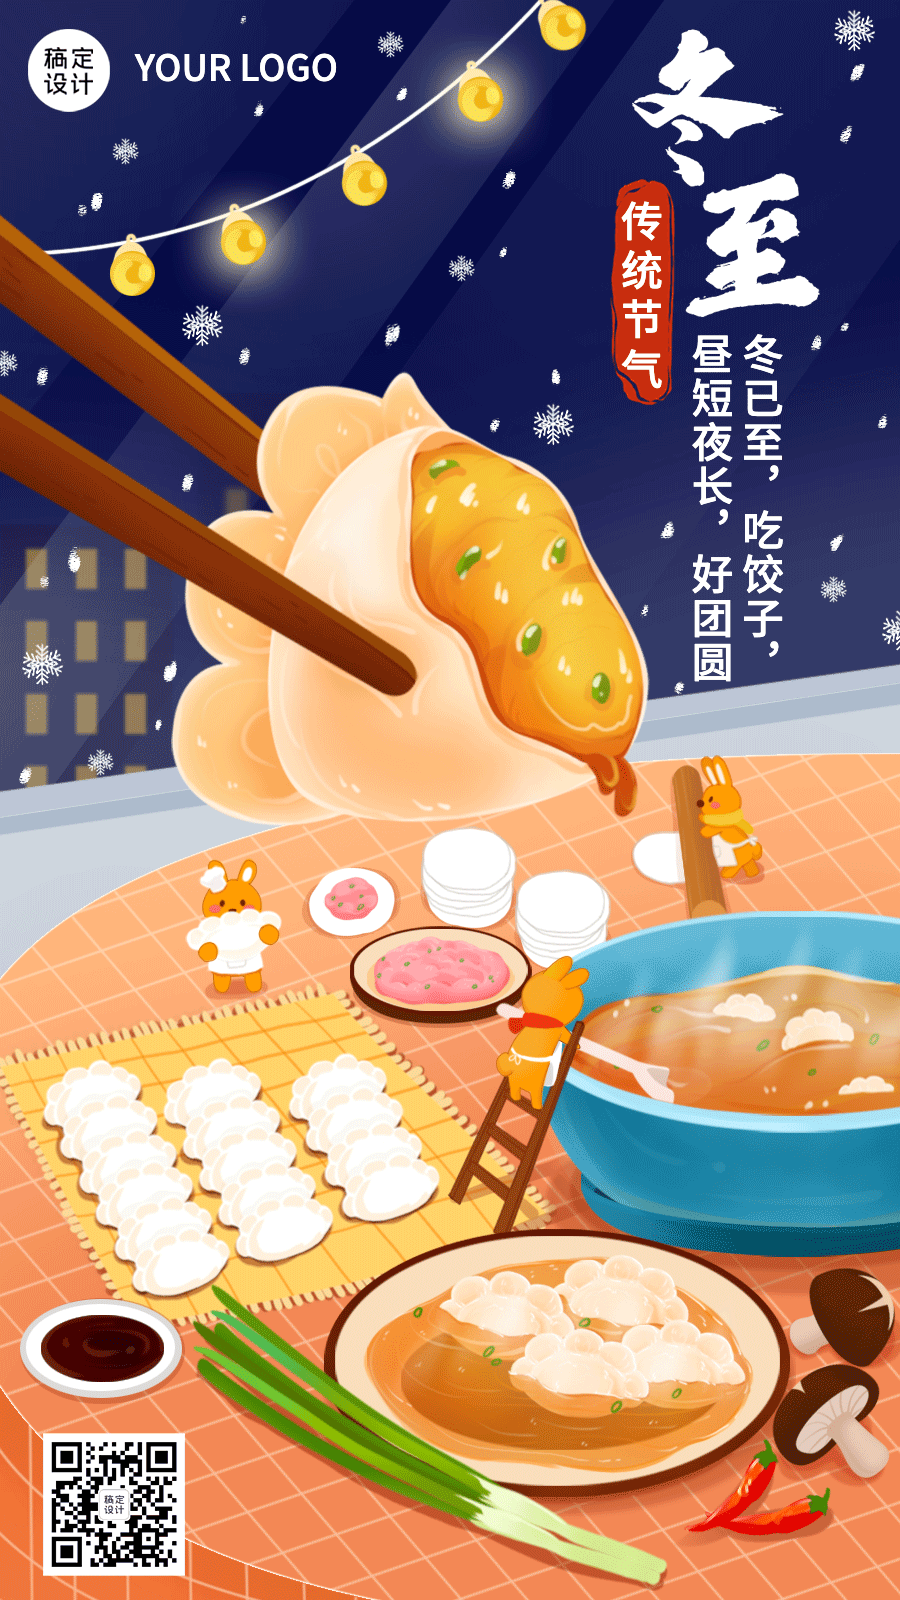 冬至节气祝福饺子插画动态海报预览效果